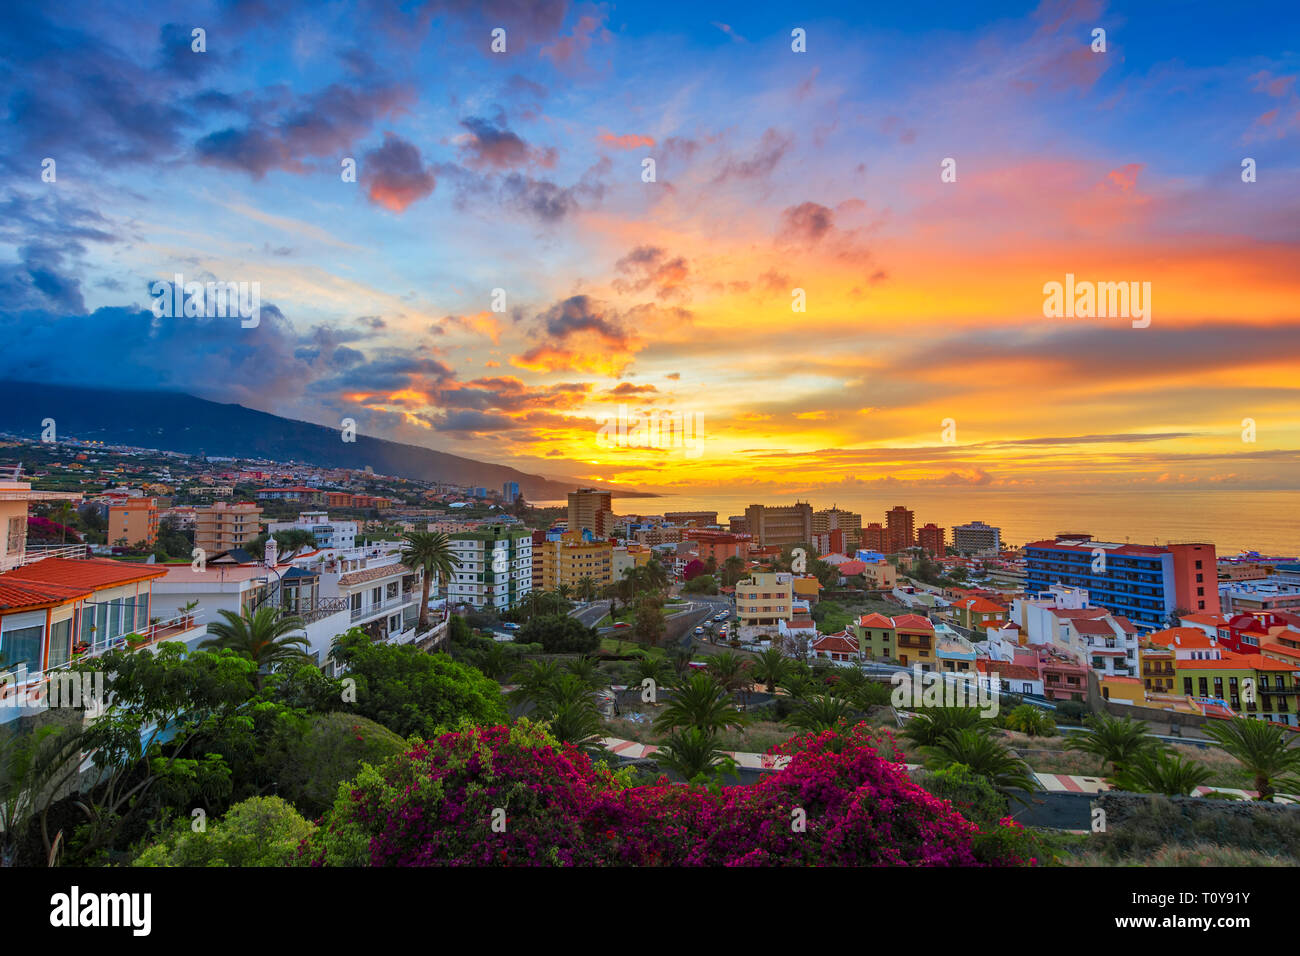 Puerto de la Cruz, Tenerife, Isole canarie, Spagna: Sceninc vista sopra la città al tramonto Foto Stock